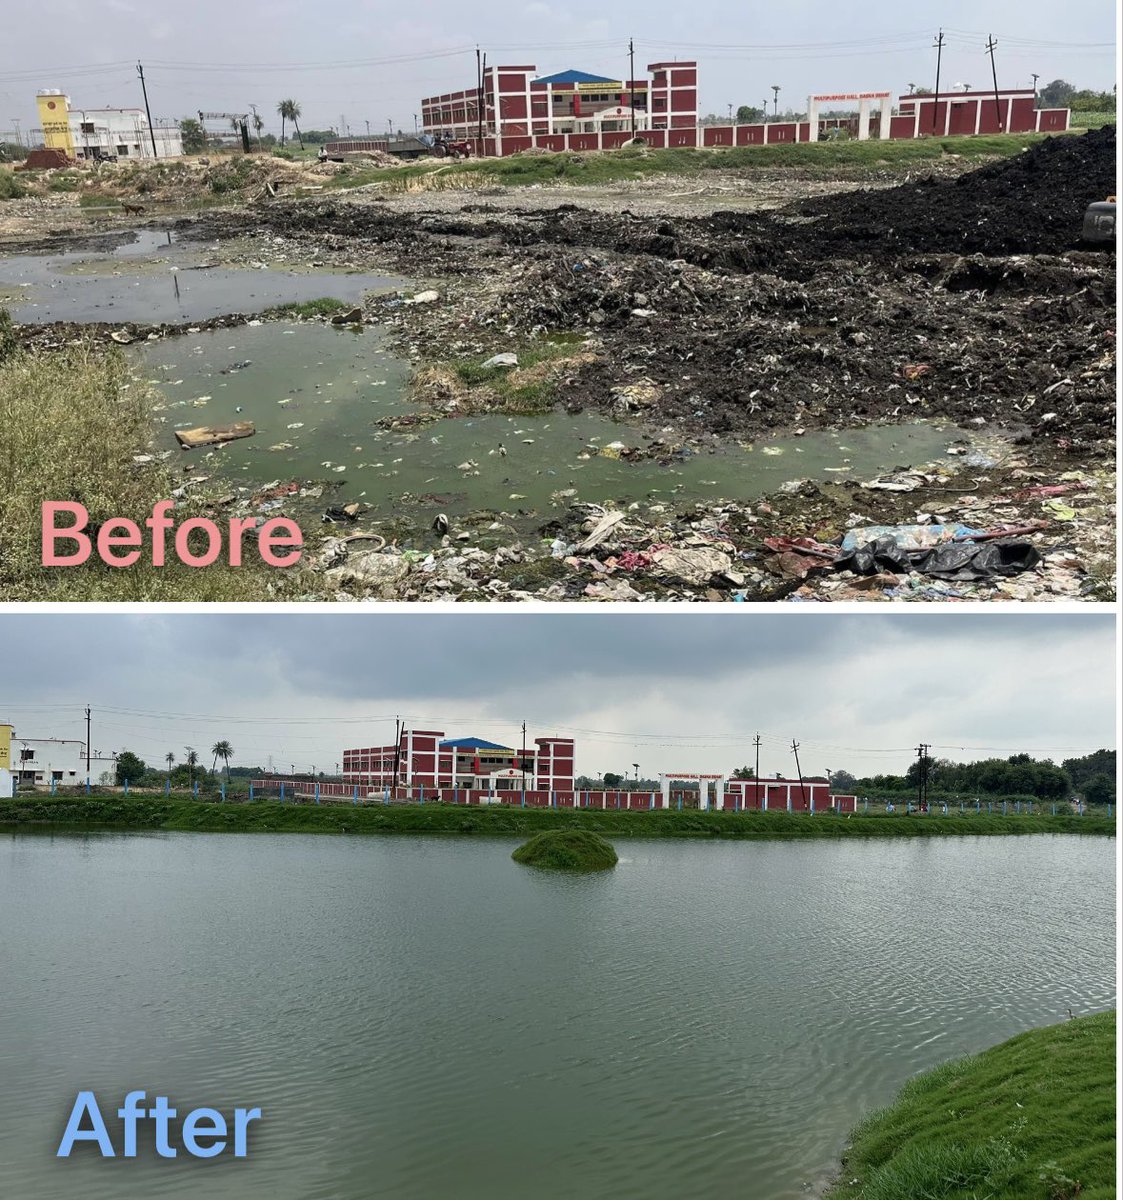 यह तालाबों को उनका सौंदर्य और प्रतिष्ठा लौटाने का एक छोटा सा प्रयासl @dm_ghaziabad @ChiefGhaziabad @asim_arun @MoJSDoWRRDGR #Pondman #DaburIndia #CSR #SDG #ESG